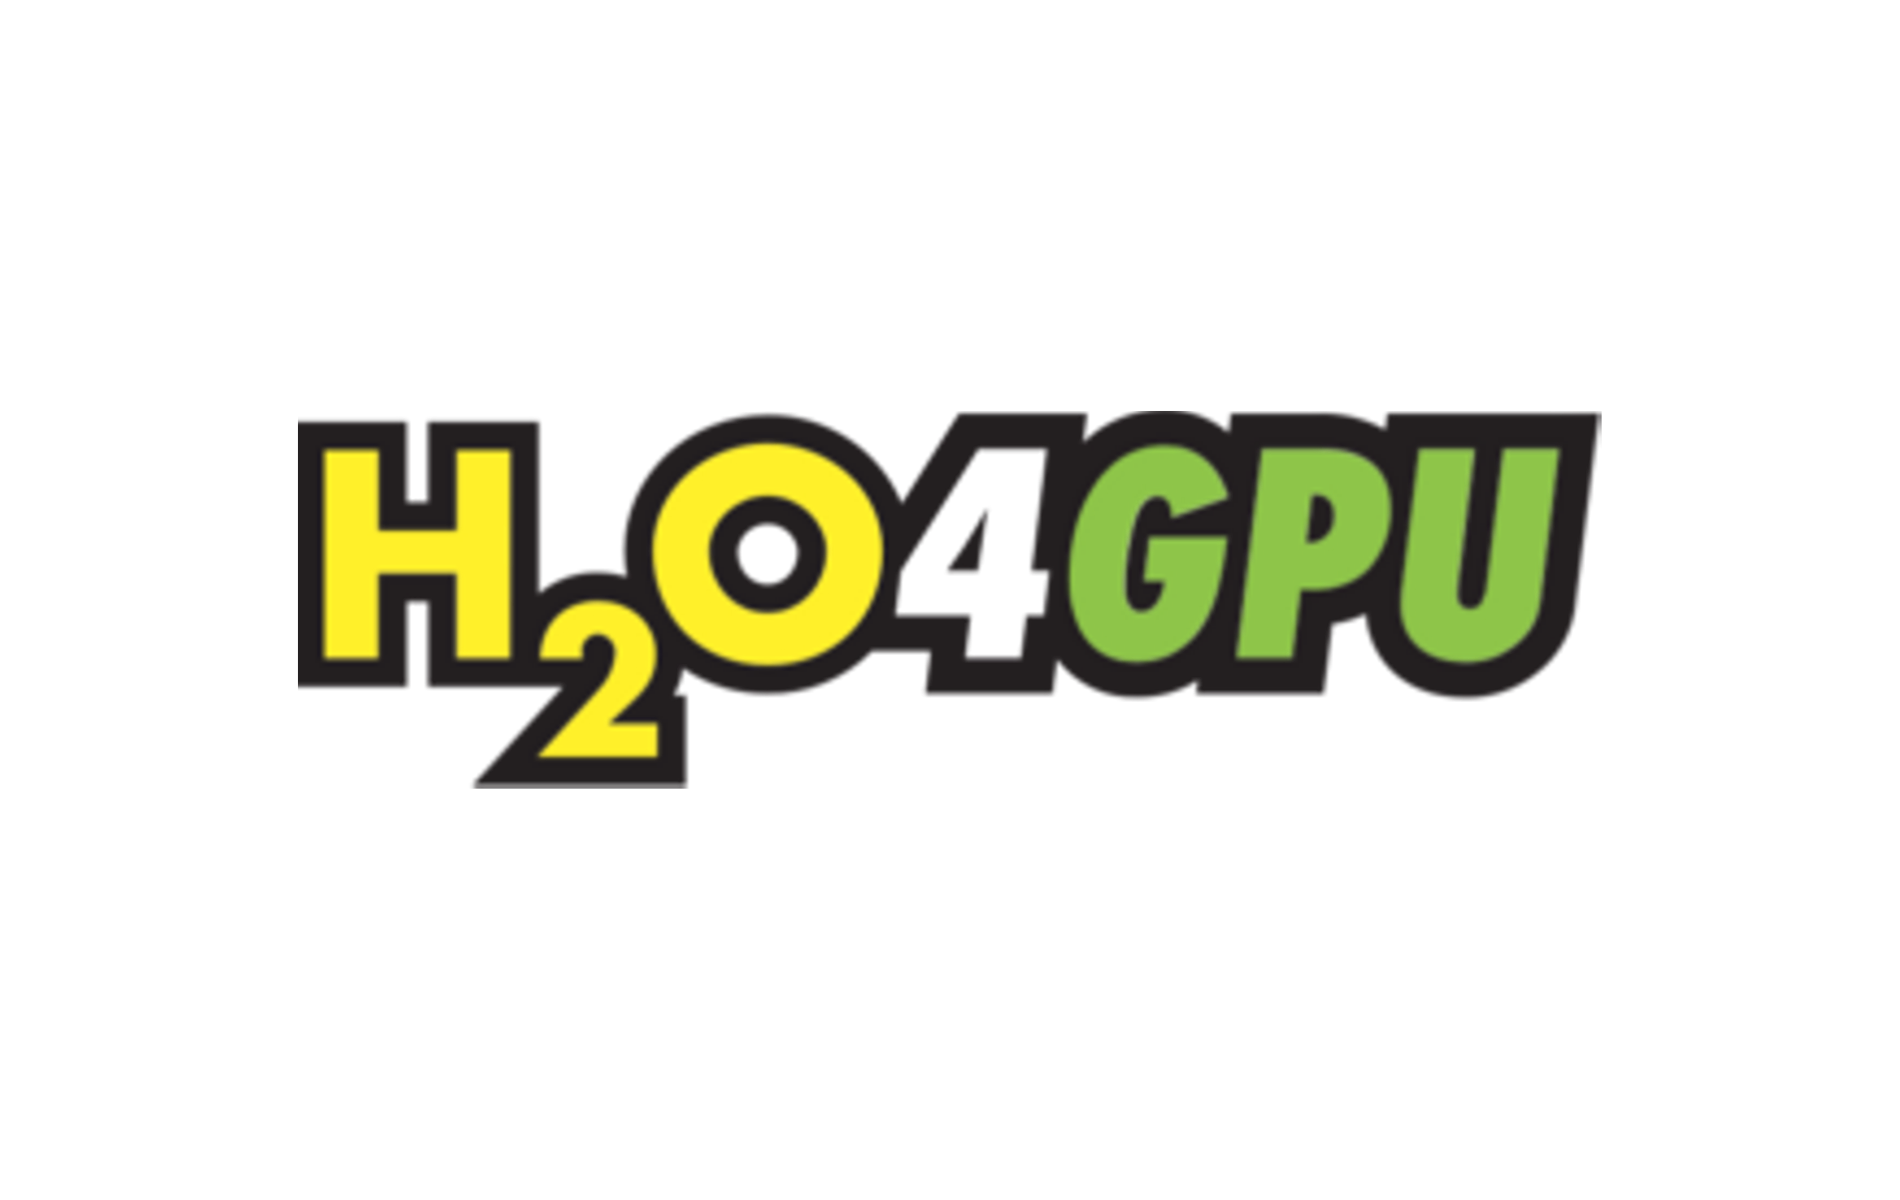 h2o4gpu-logo